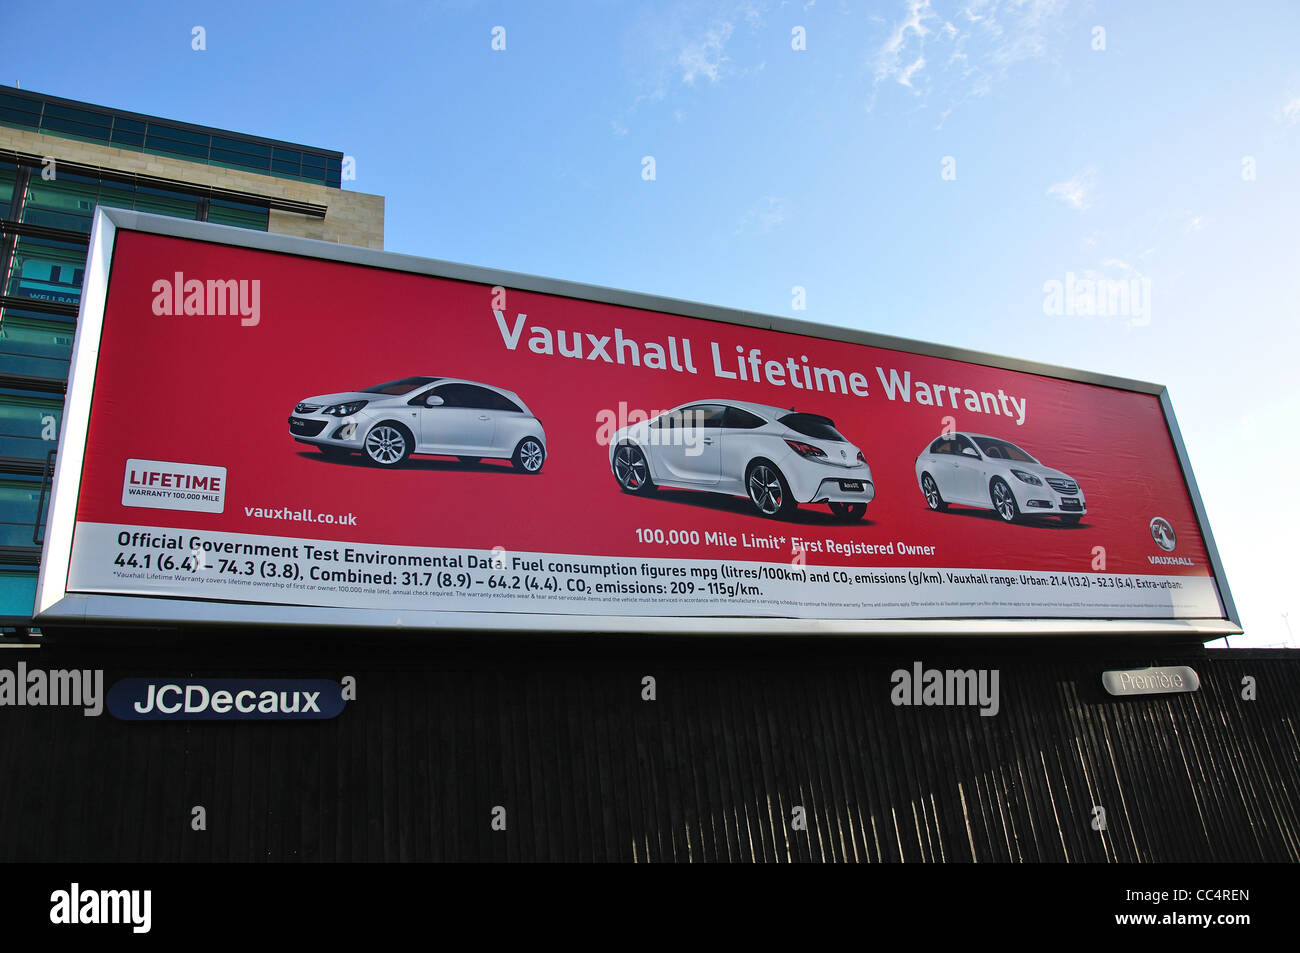 Auto Vauxhall cartellone pubblicitario nel centro cittadino di Newcastle upon Tyne, Tyne and Wear, England, Regno Unito Foto Stock